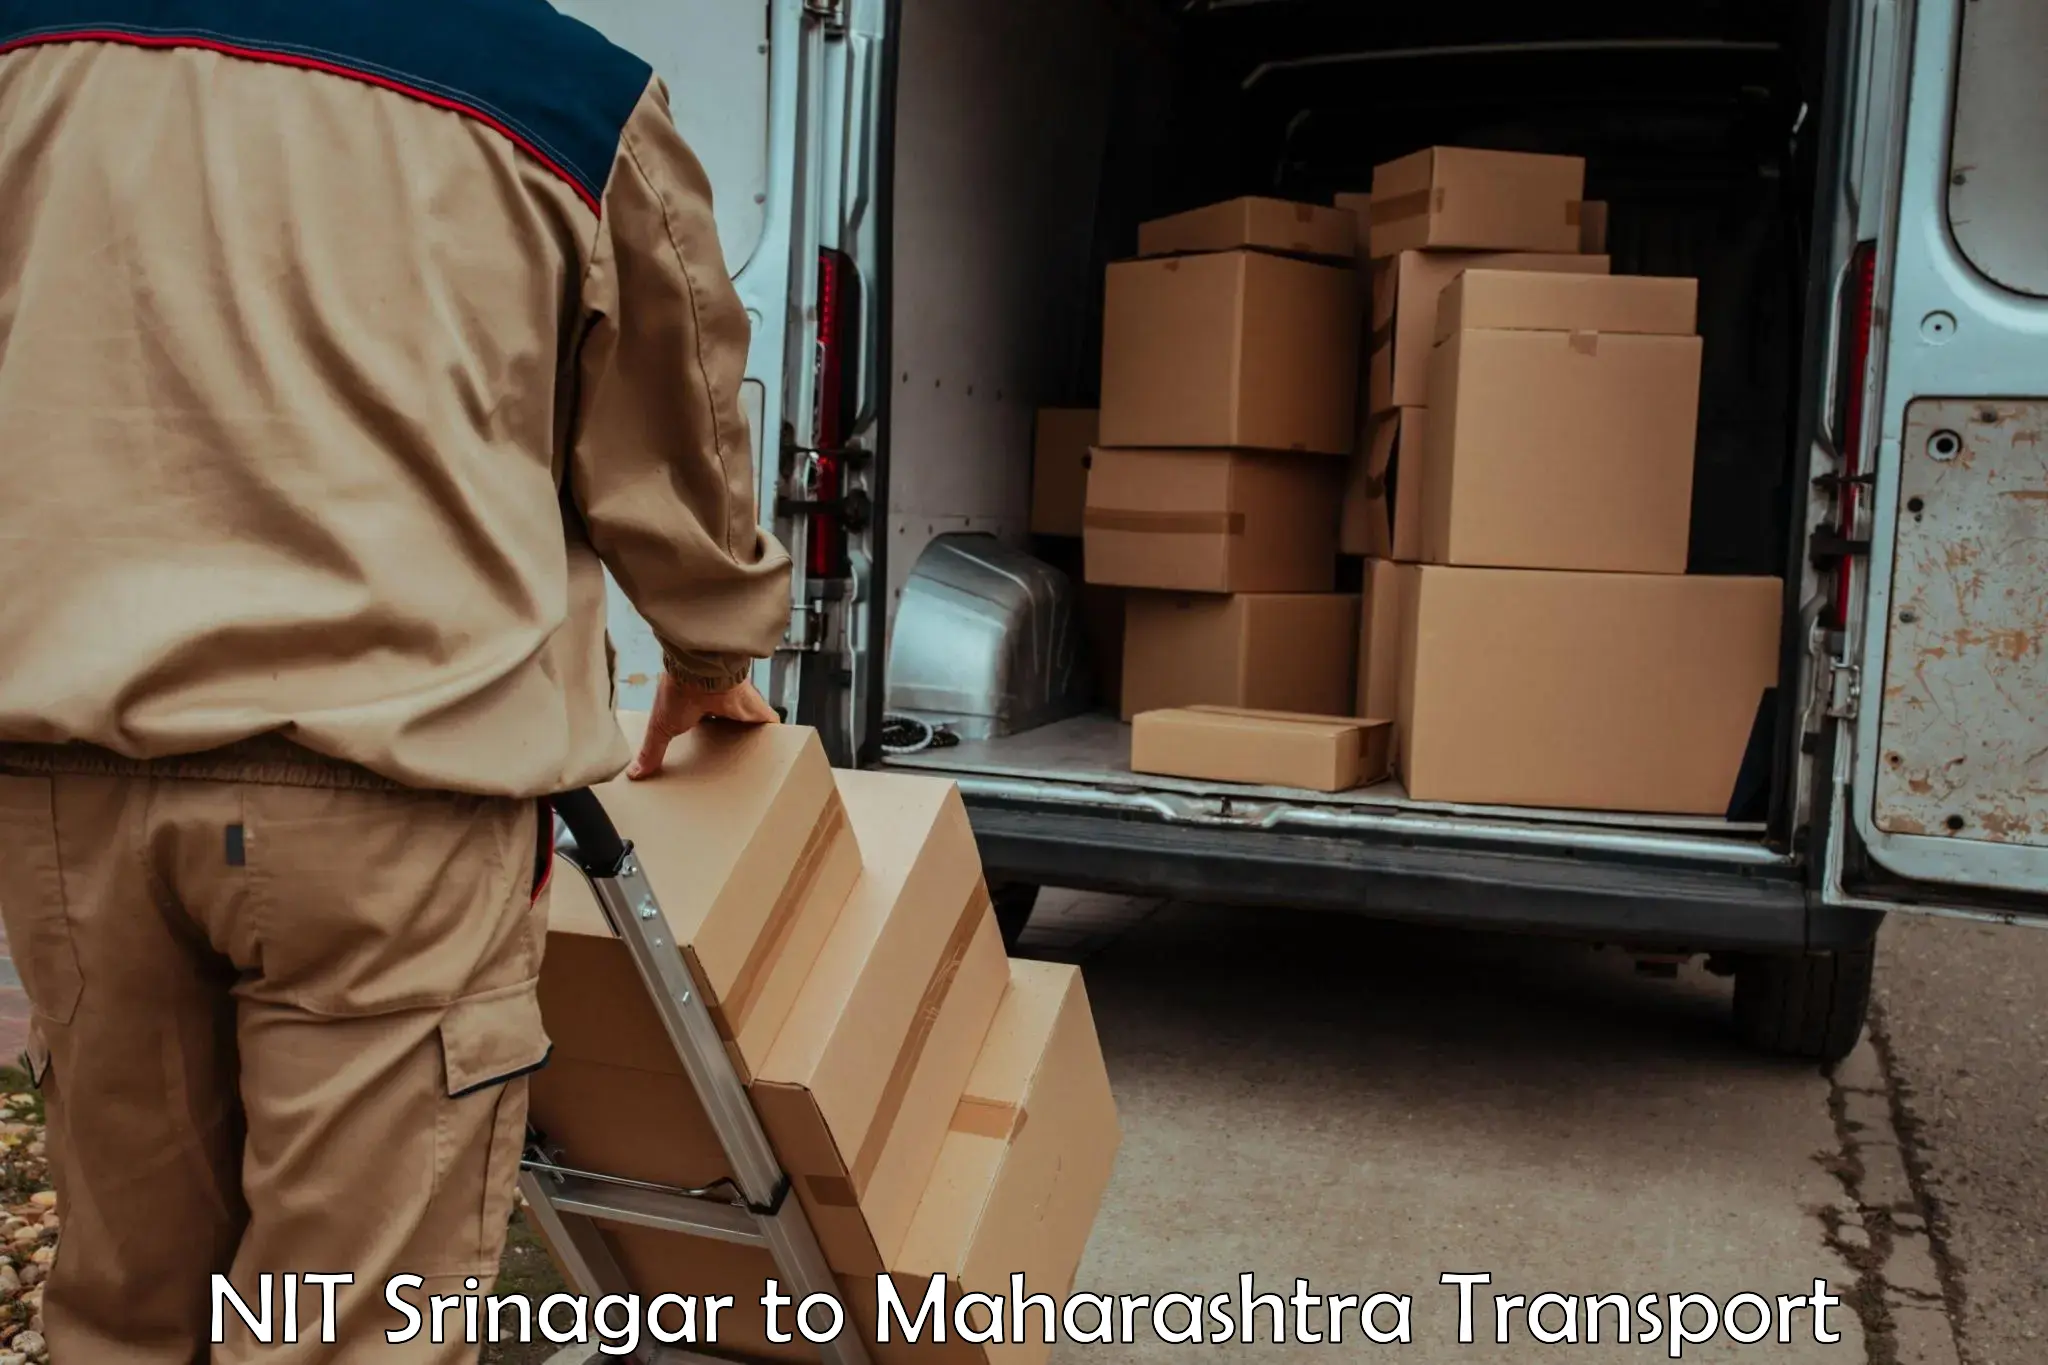 All India transport service NIT Srinagar to Raigarh Maharashtra